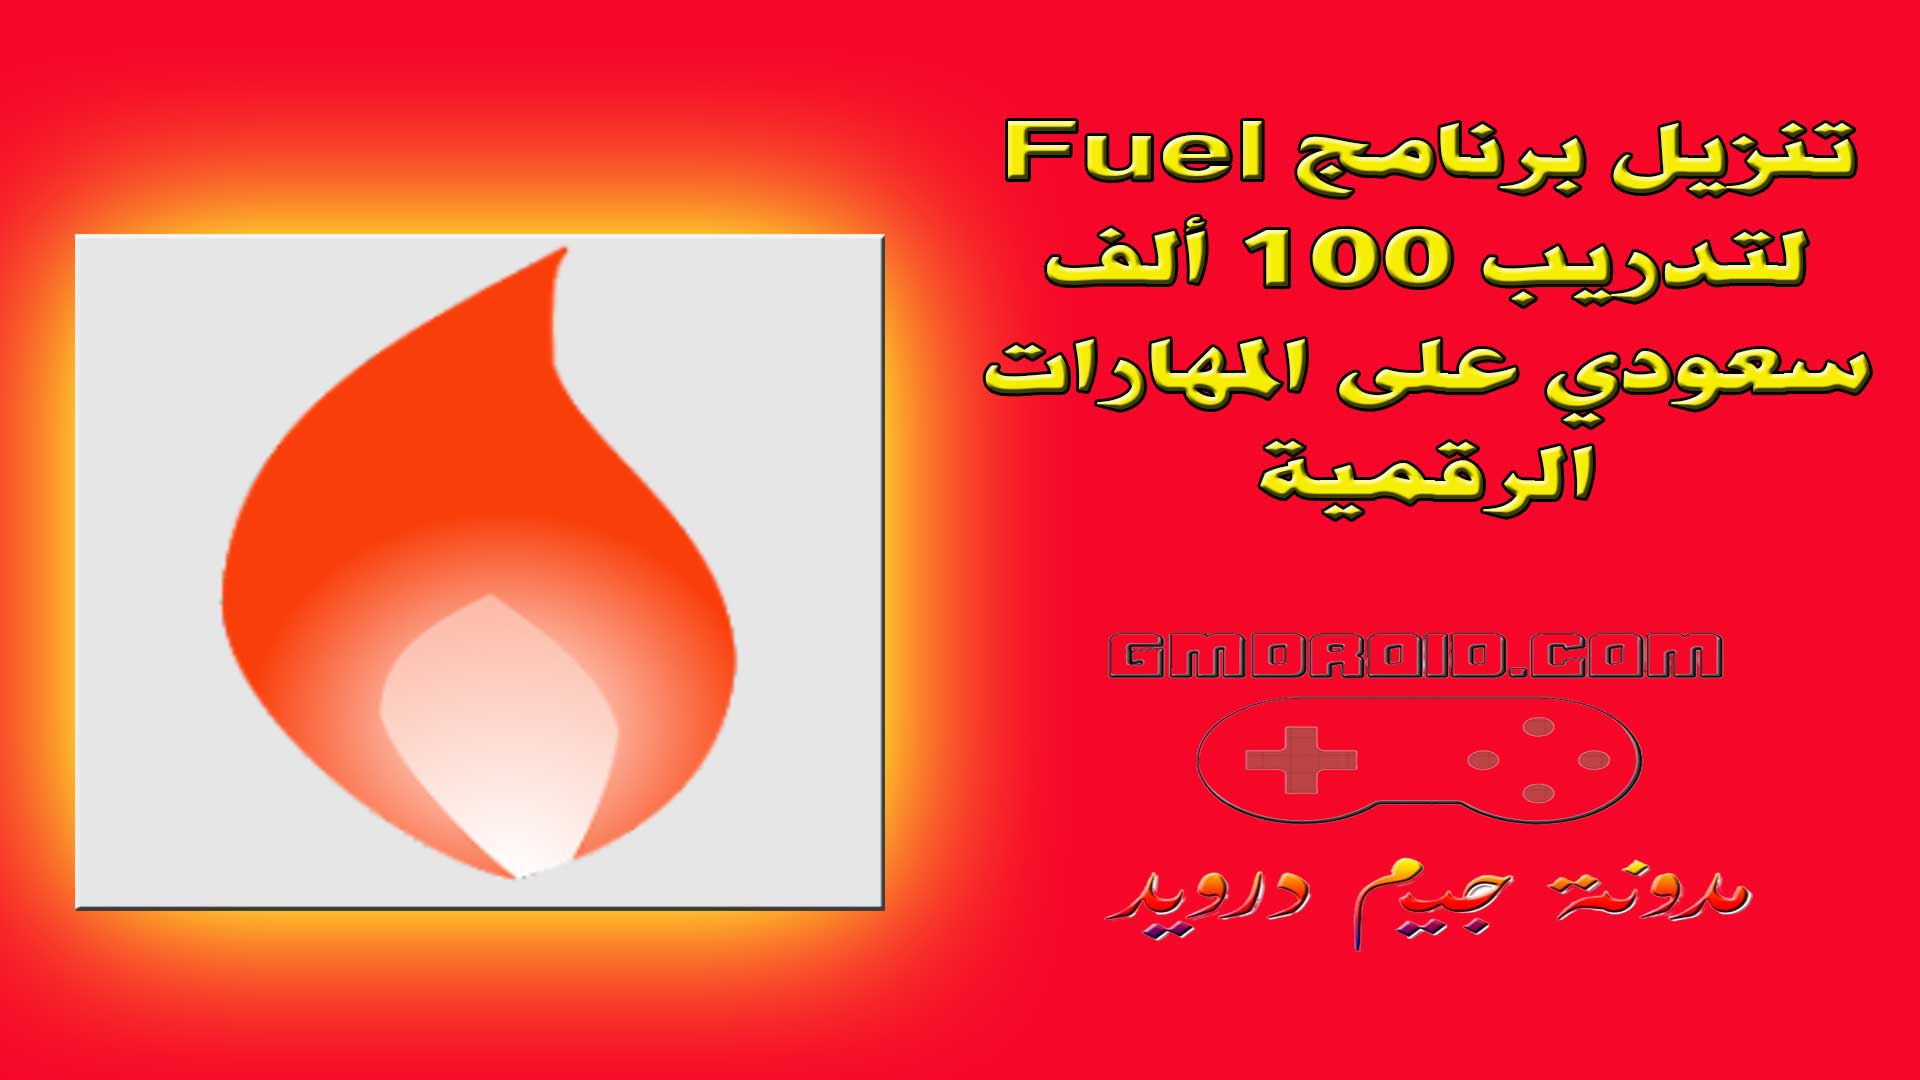 تنزيل برنامج Fuel لتدريب 100 ألف سعودي على المهارات الرقمية